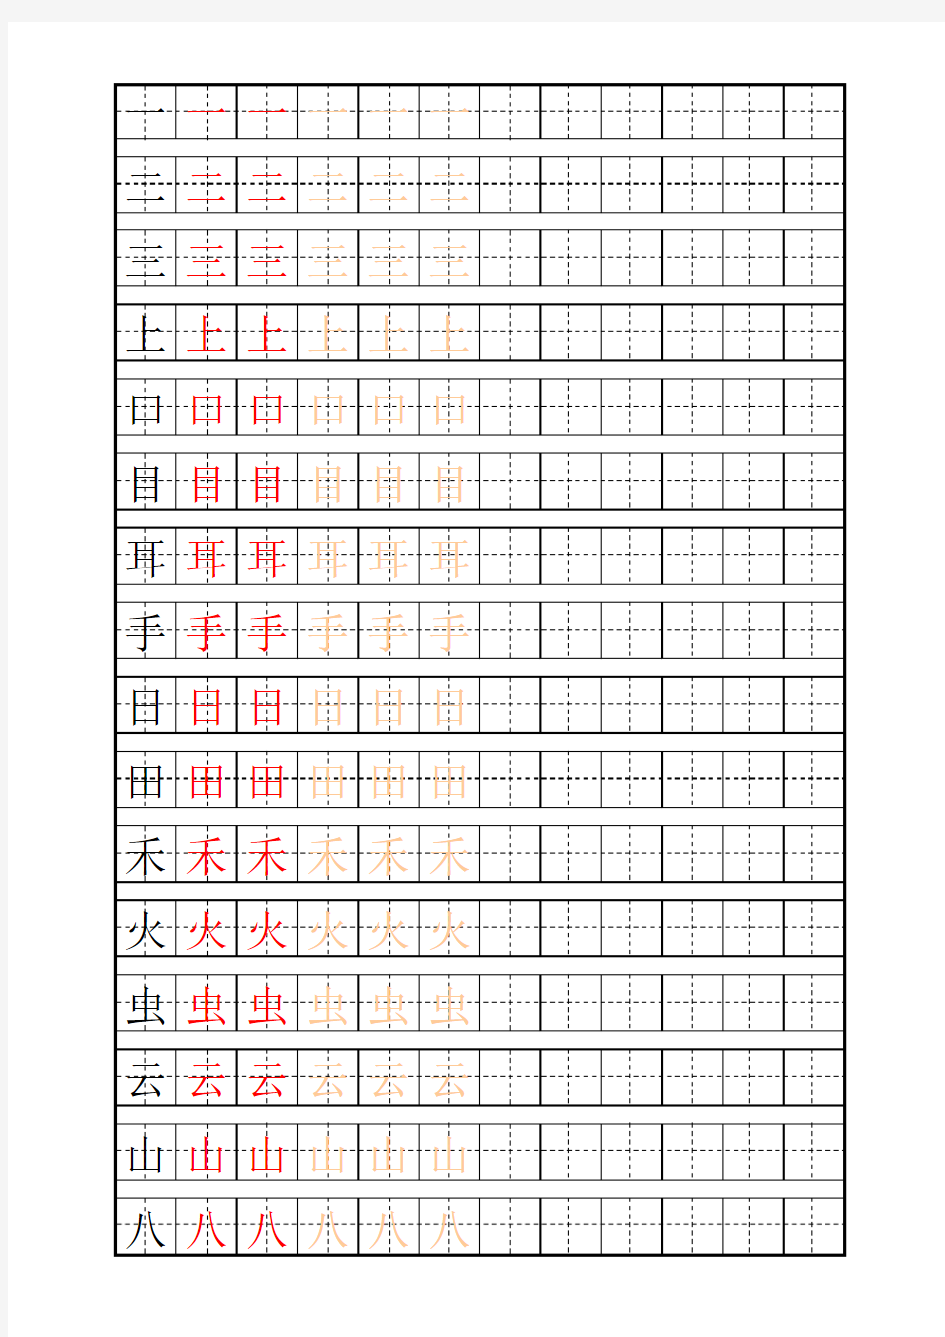 田字格练字自动生成器练字标准版-写字表100字-可以随意变更汉字